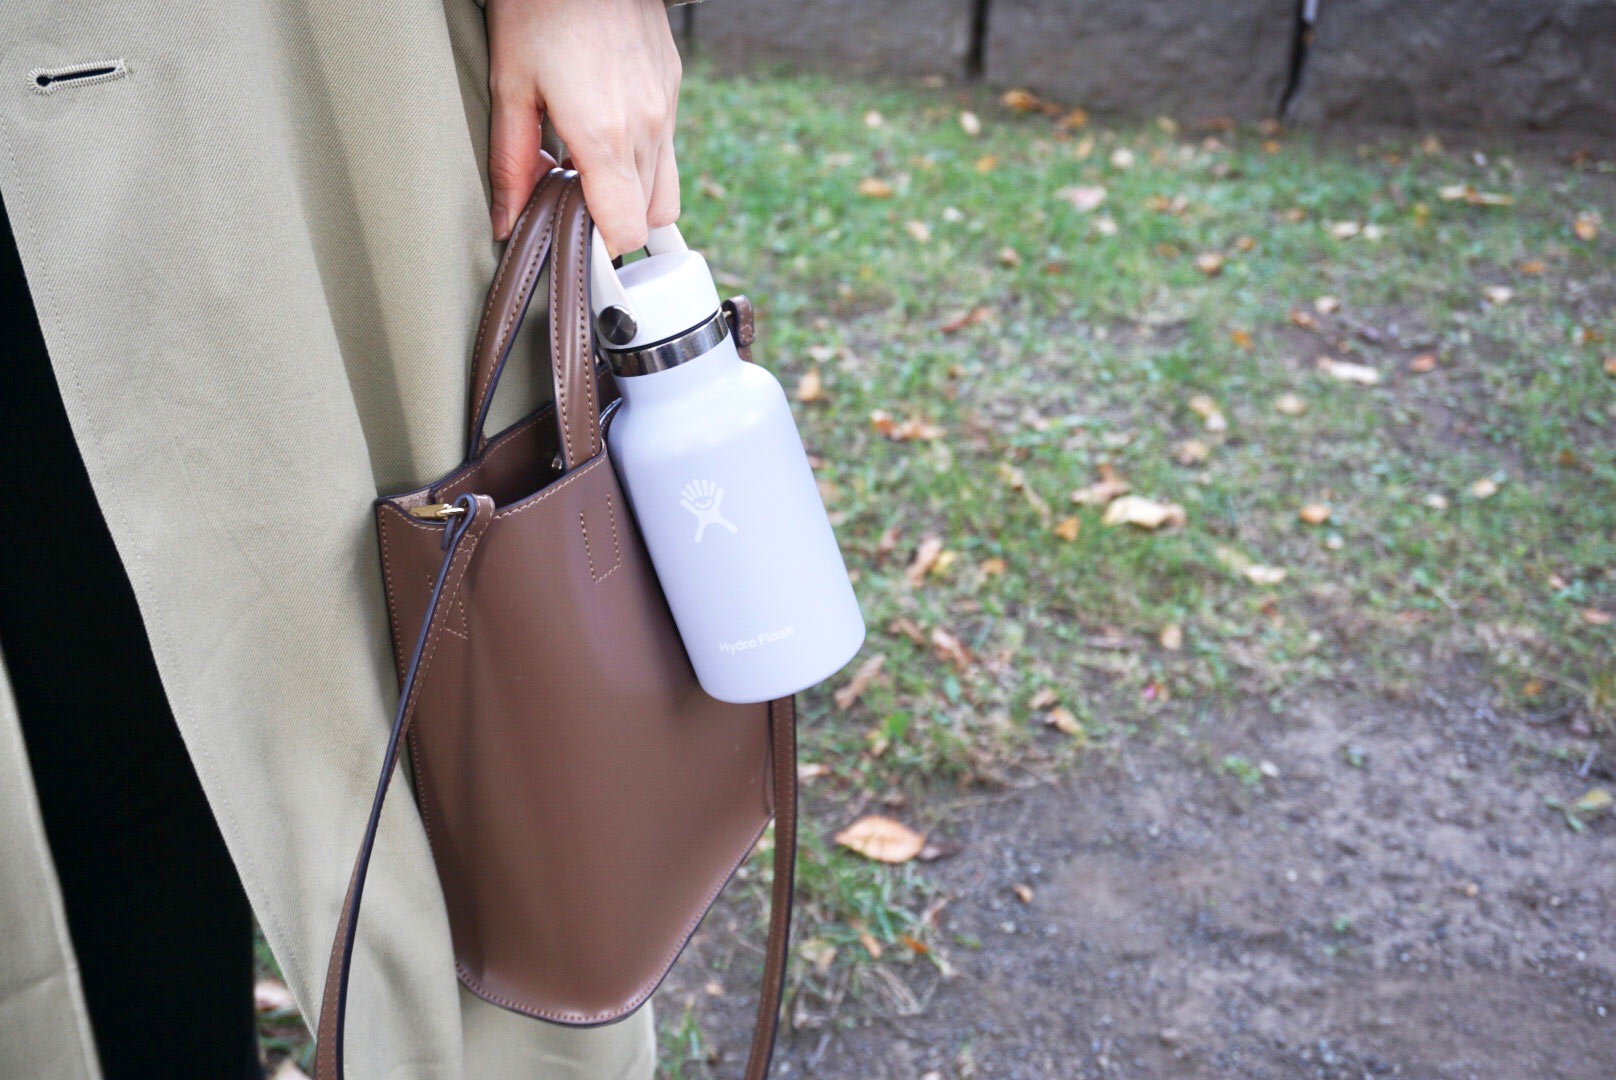 無料の給水スポットを探してくれるアプリ「mymizu」。マイボトルを持ち歩いて財布や環境に優しい毎日を